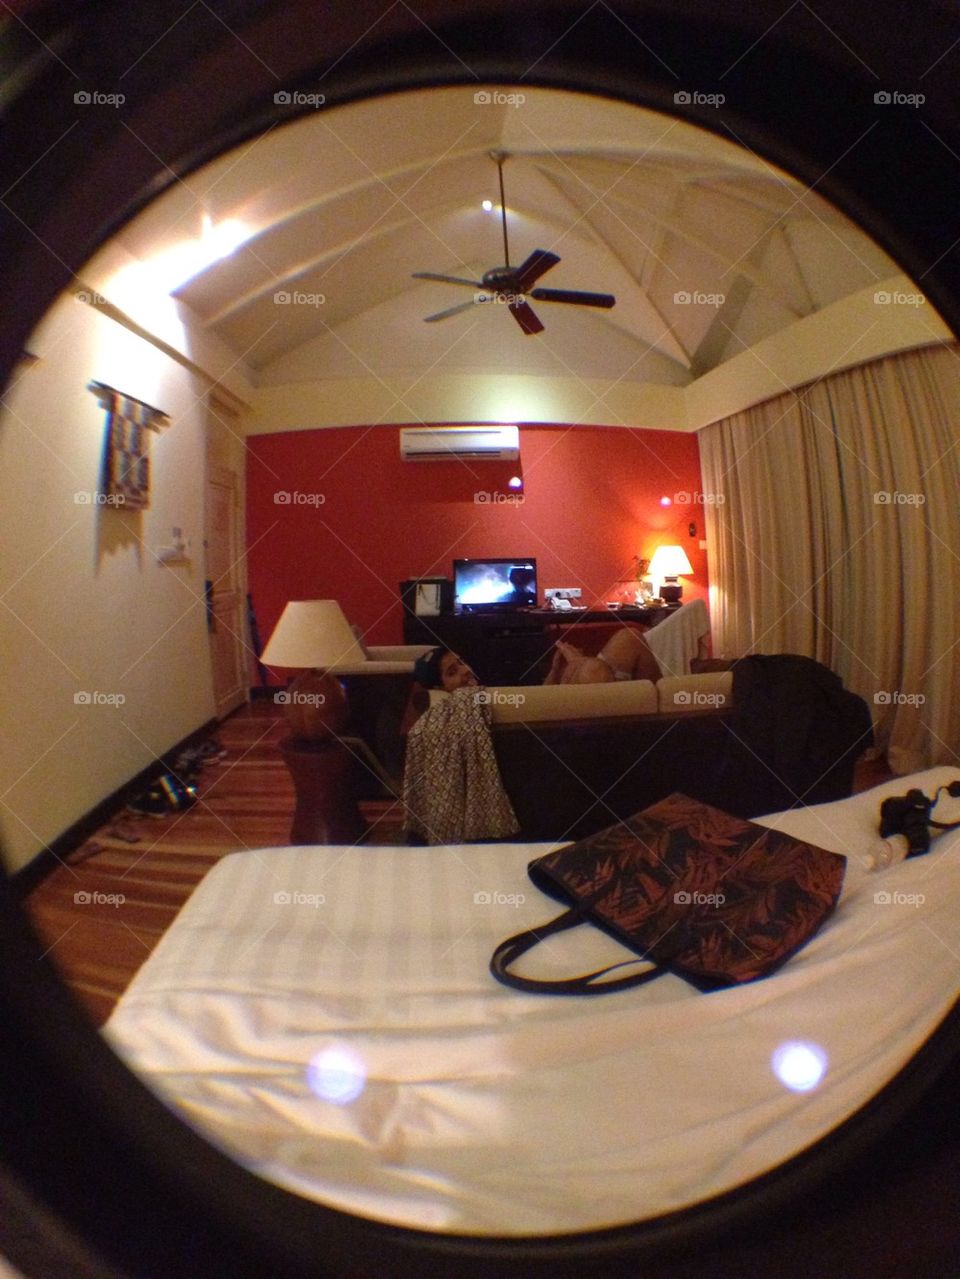 A hotel room through a wide lens